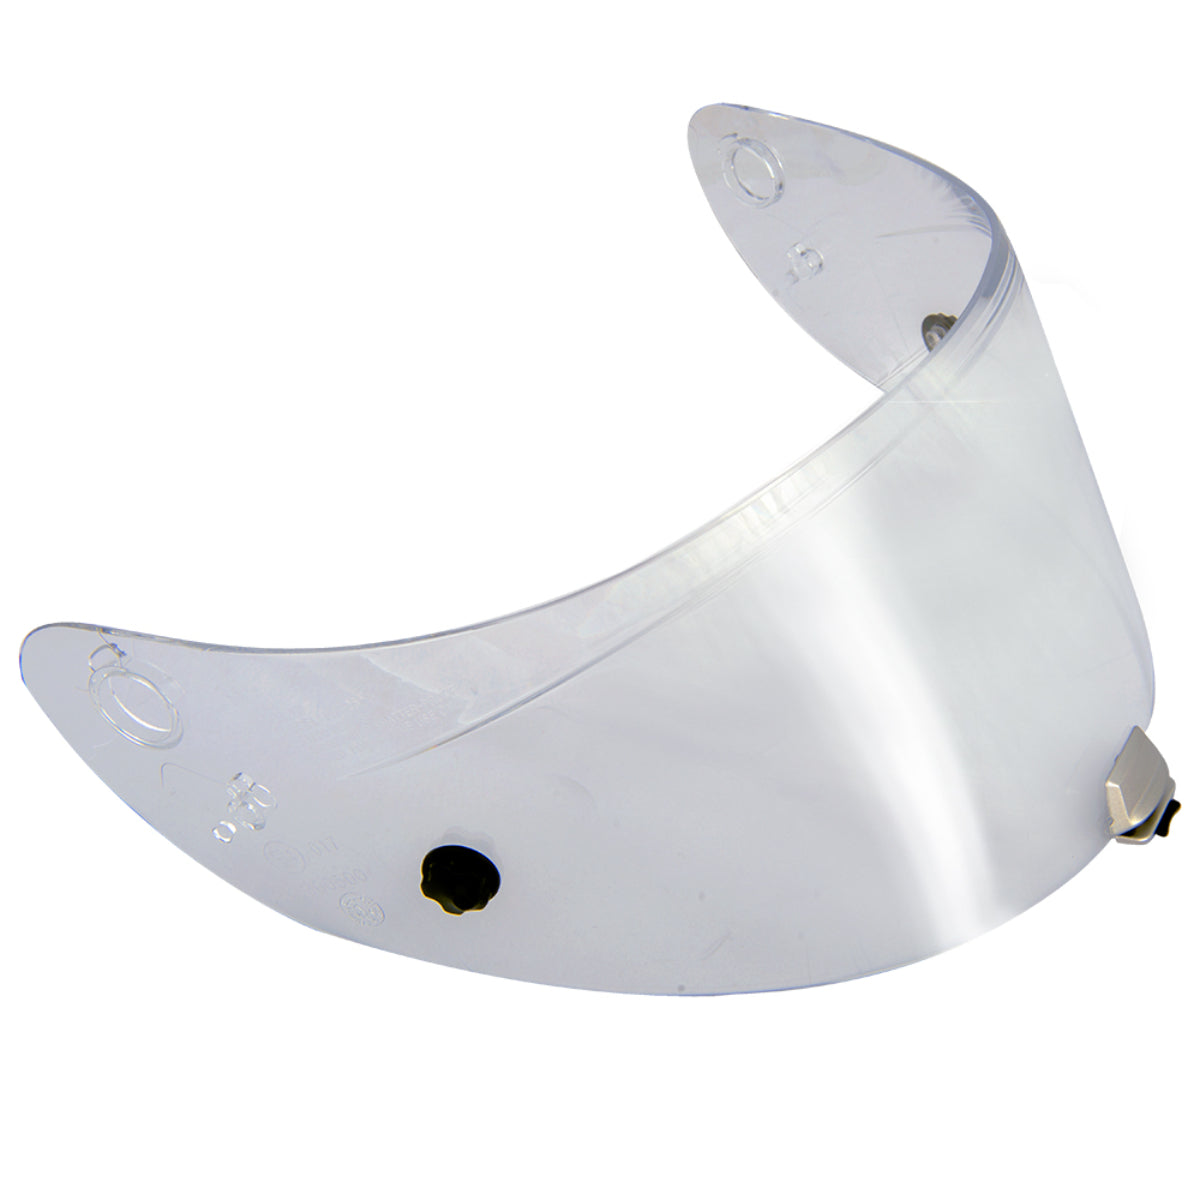 Genuine HJC Helmets replacement visors for HJC Models RPHA 11